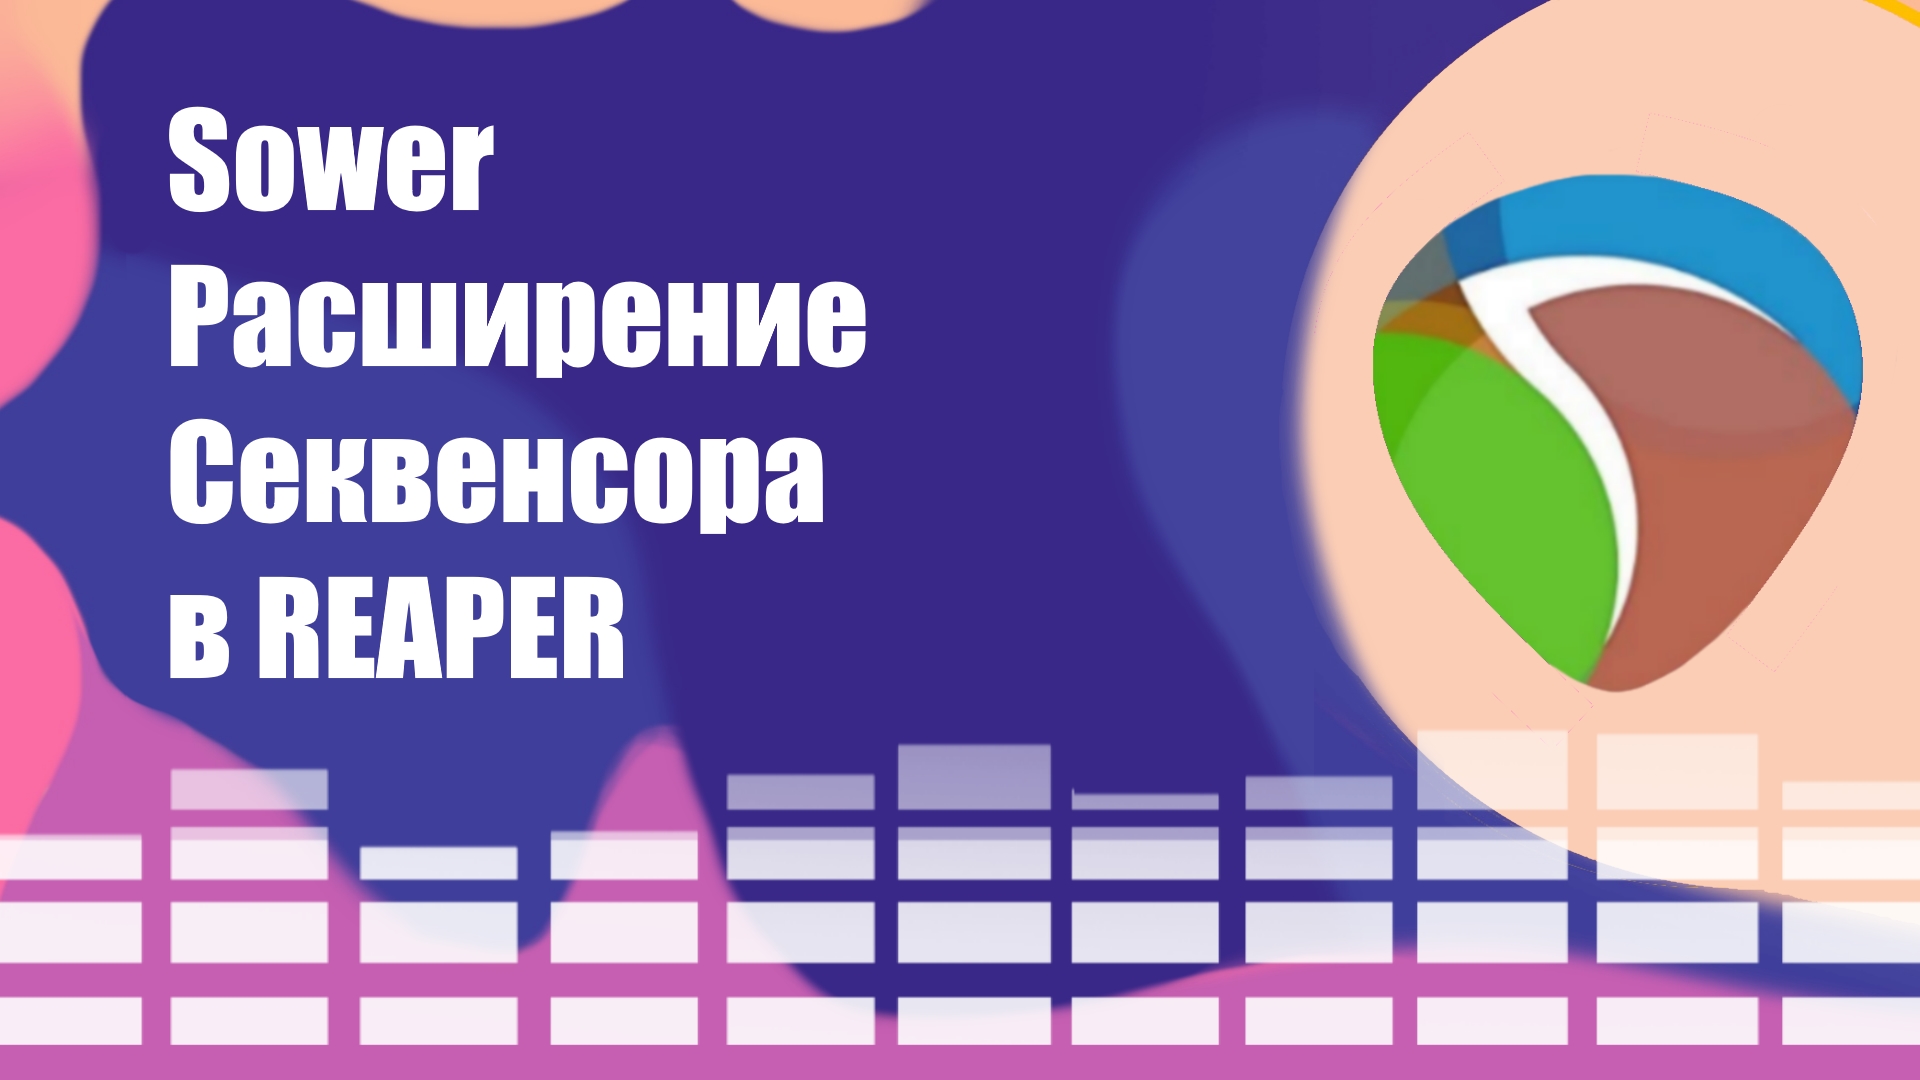 Sower Расширение Cеквенсора в REAPER